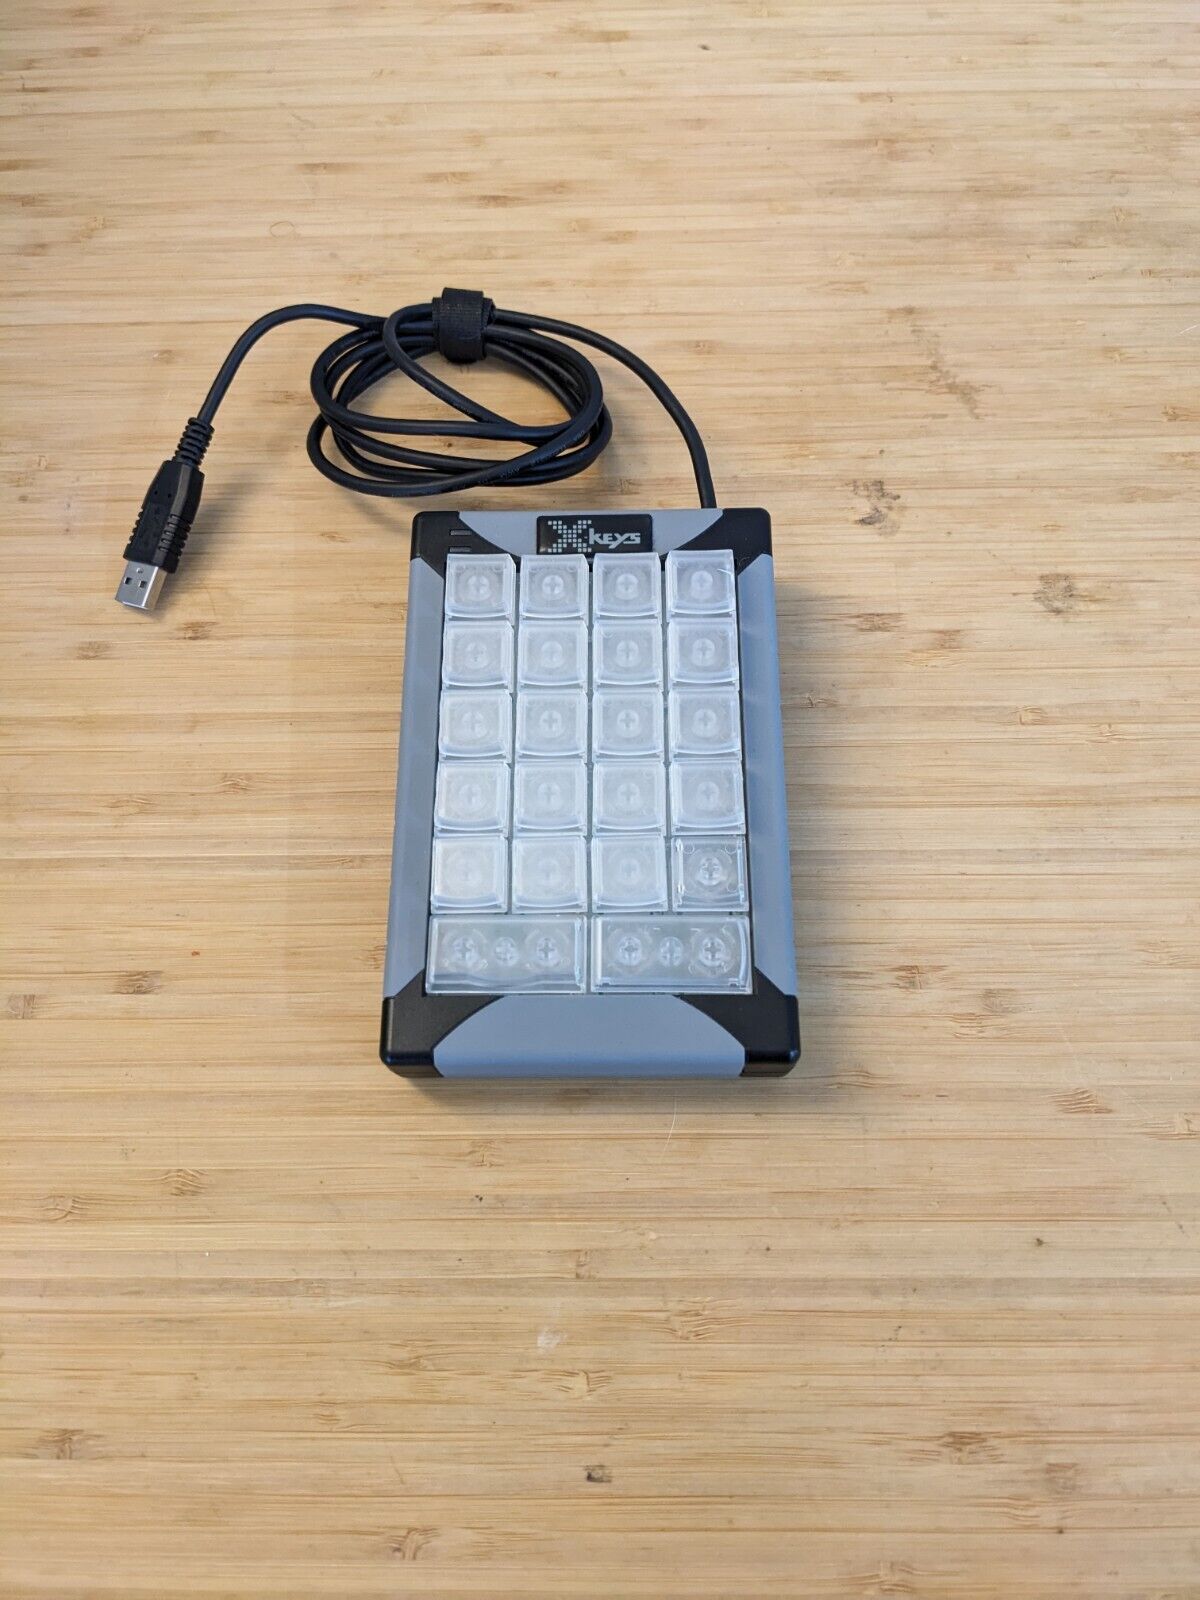 X-keys XK-24 USB Keypad